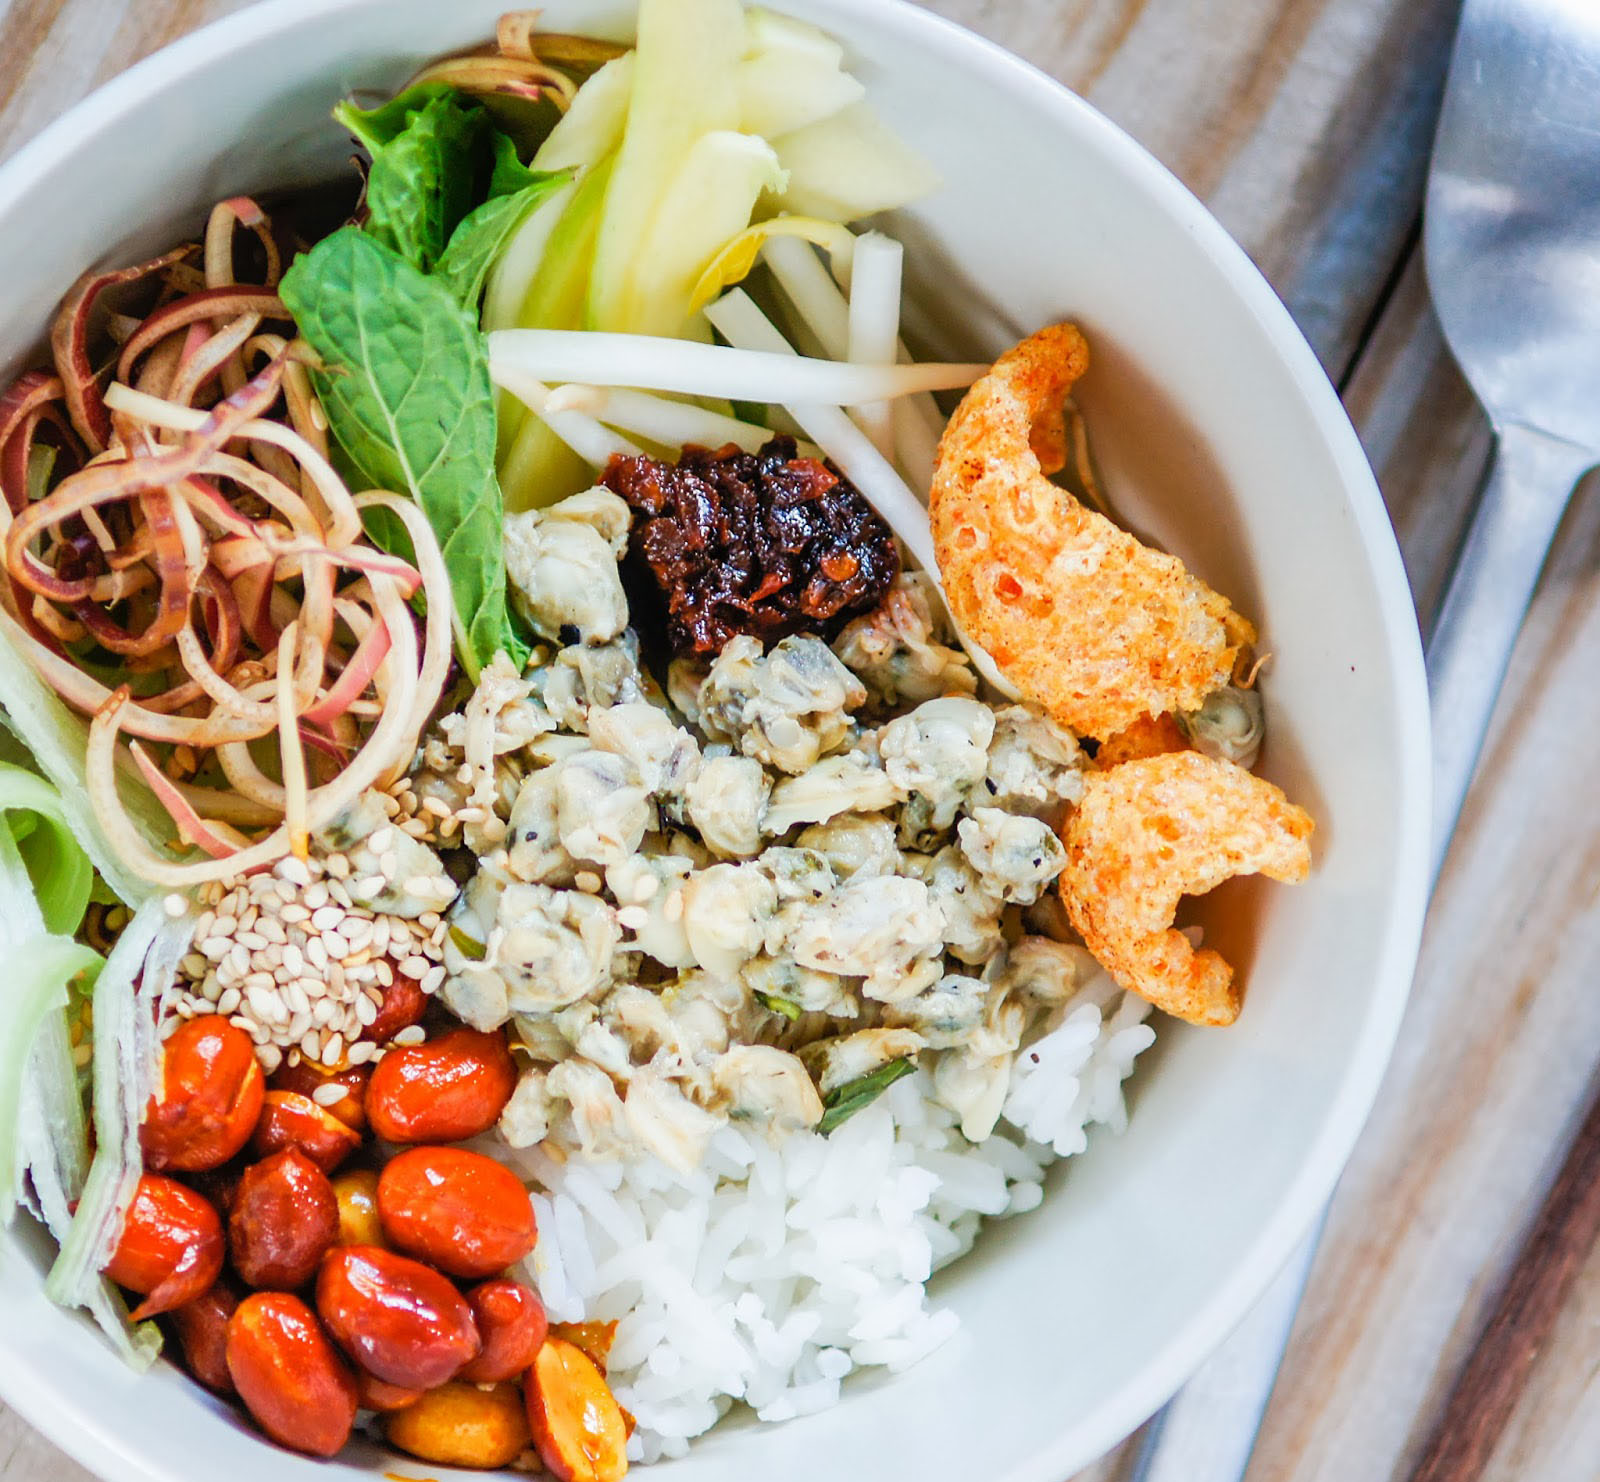 Cơm hến – món ăn đậm đà phong vị xứ Huế